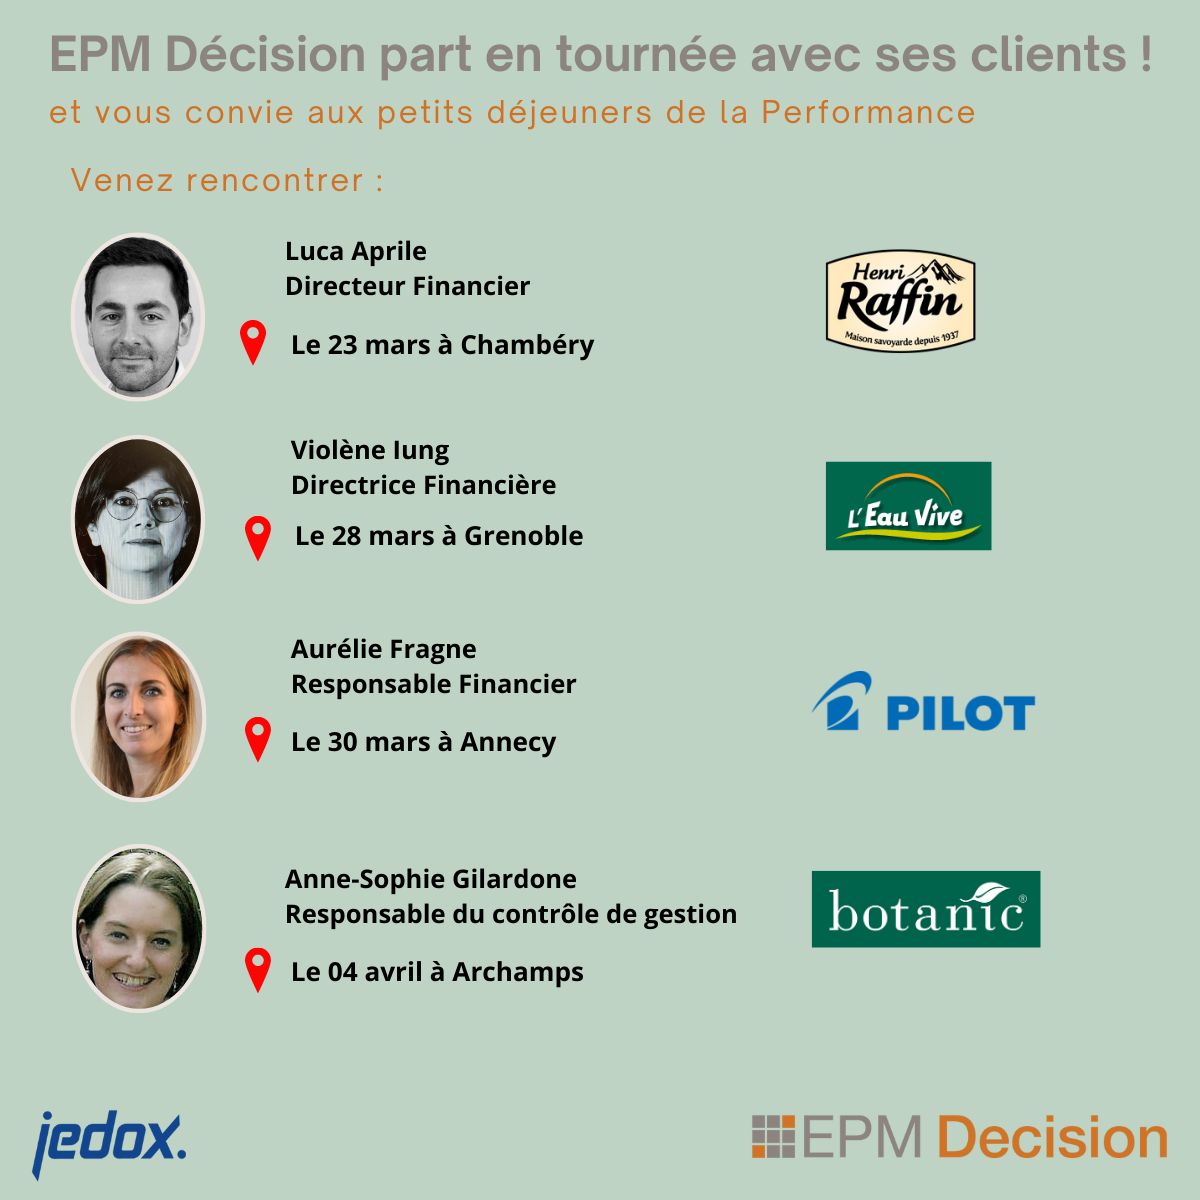 EPM DECISION PART EN TOURNEE AVEC SES CLIENTS